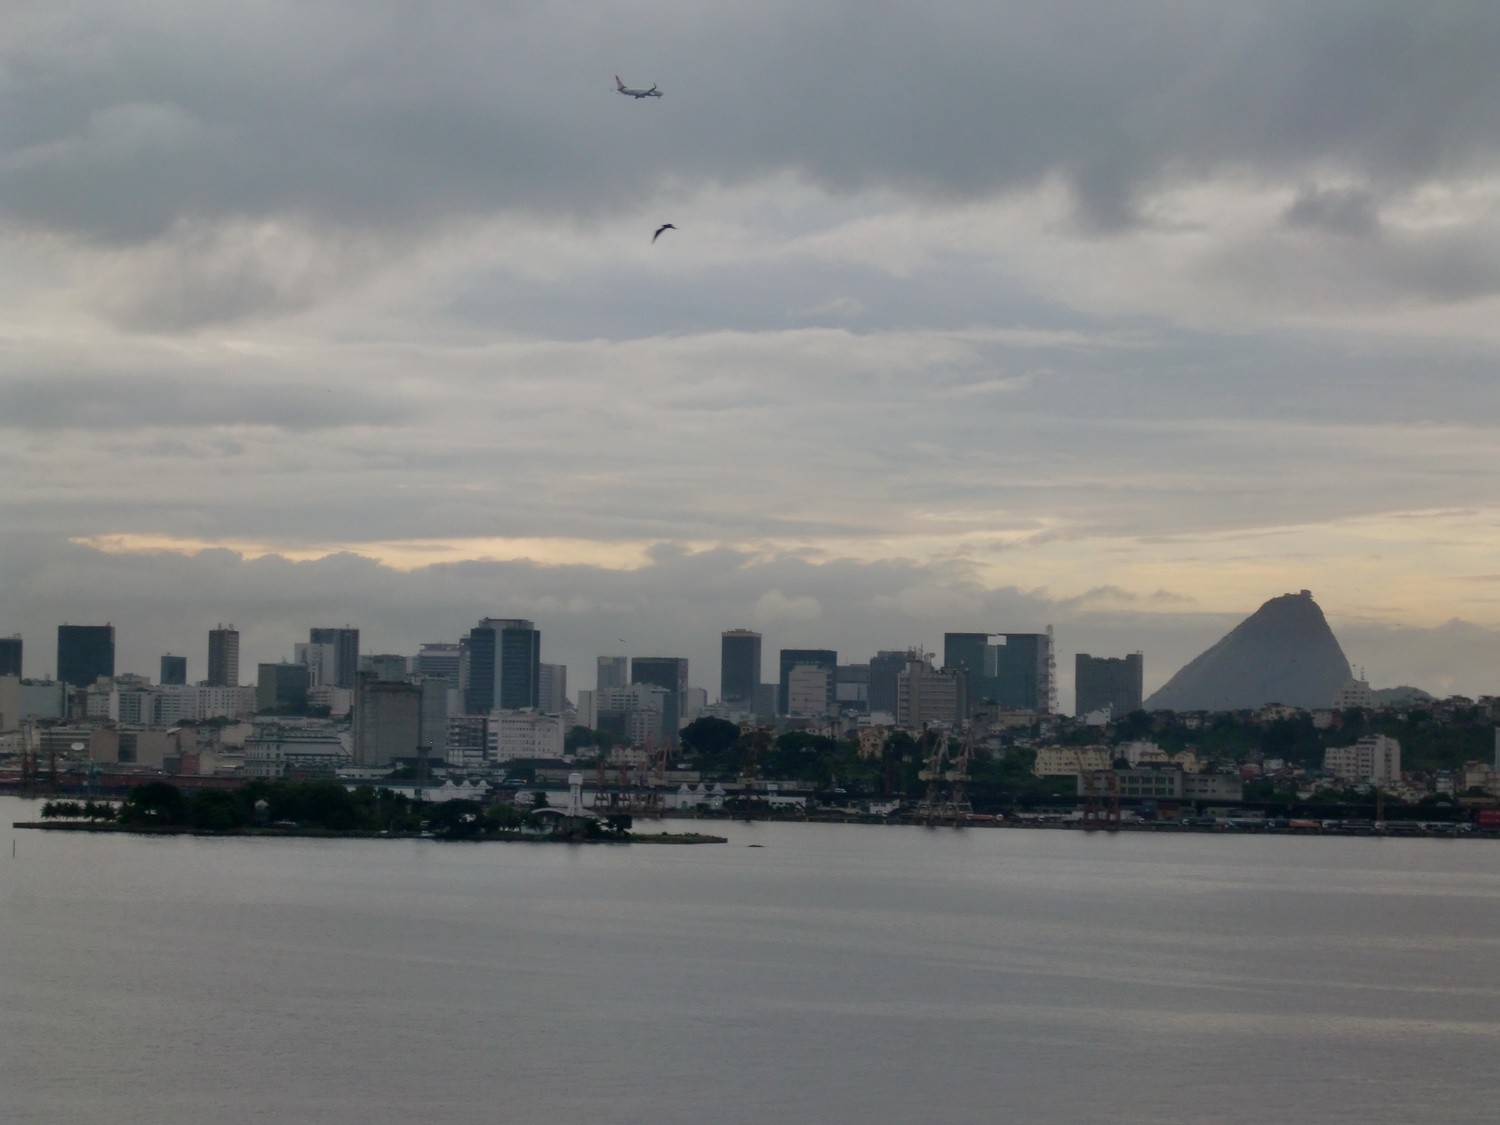 Skyline of Rio de Janeiro with Sugar Loaf